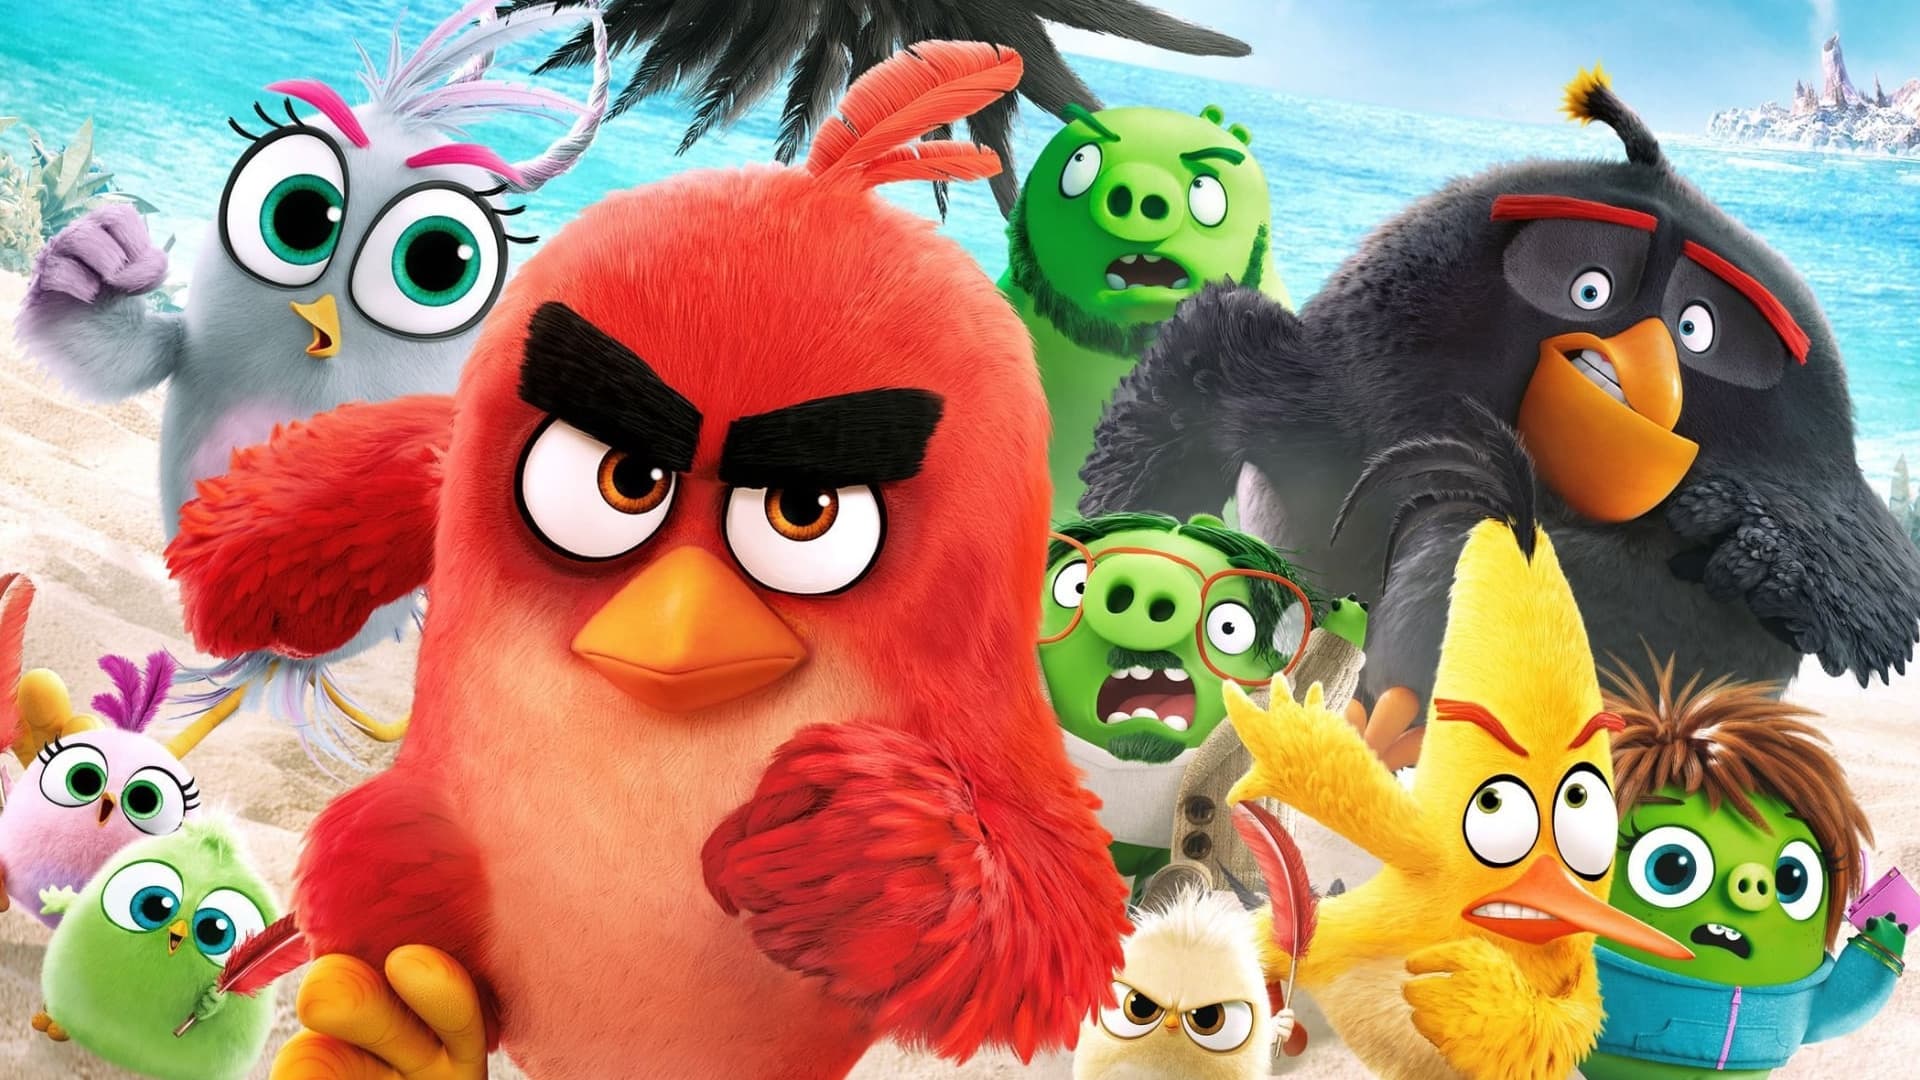 Image du film Angry Birds : copains comme cochons tnth2nseagtoxv6citpsvczsixwjpg